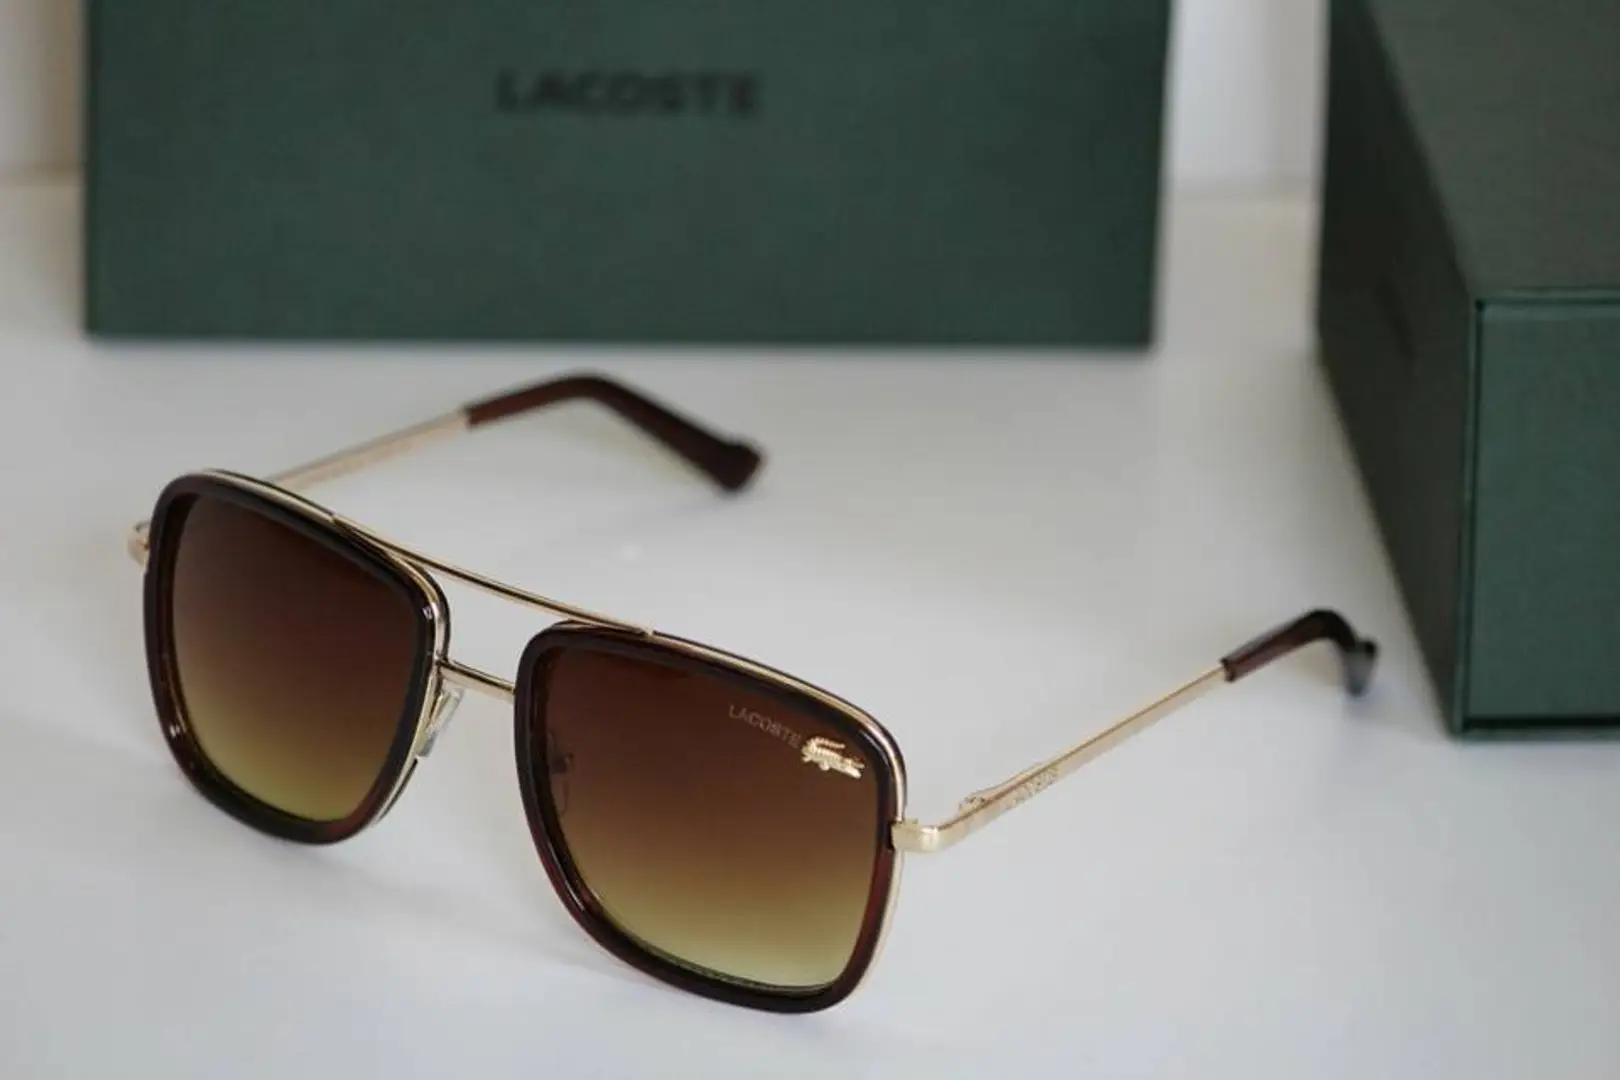 sunglasses lacoste price